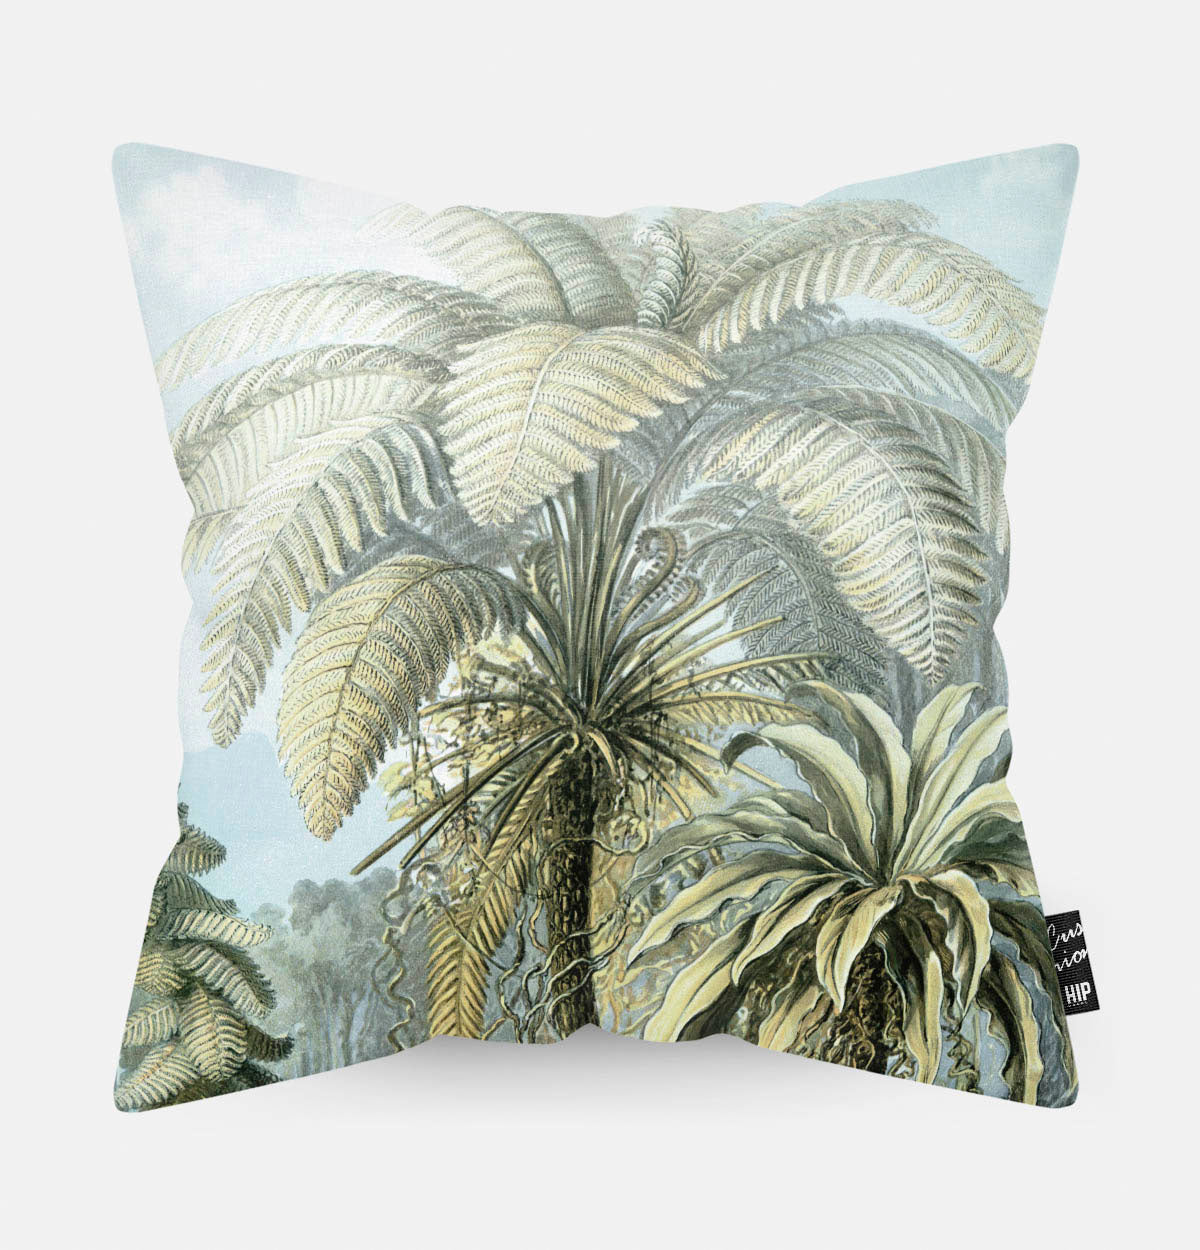 Kussen met een groene palmboom in de jungle erop afgebeeld.